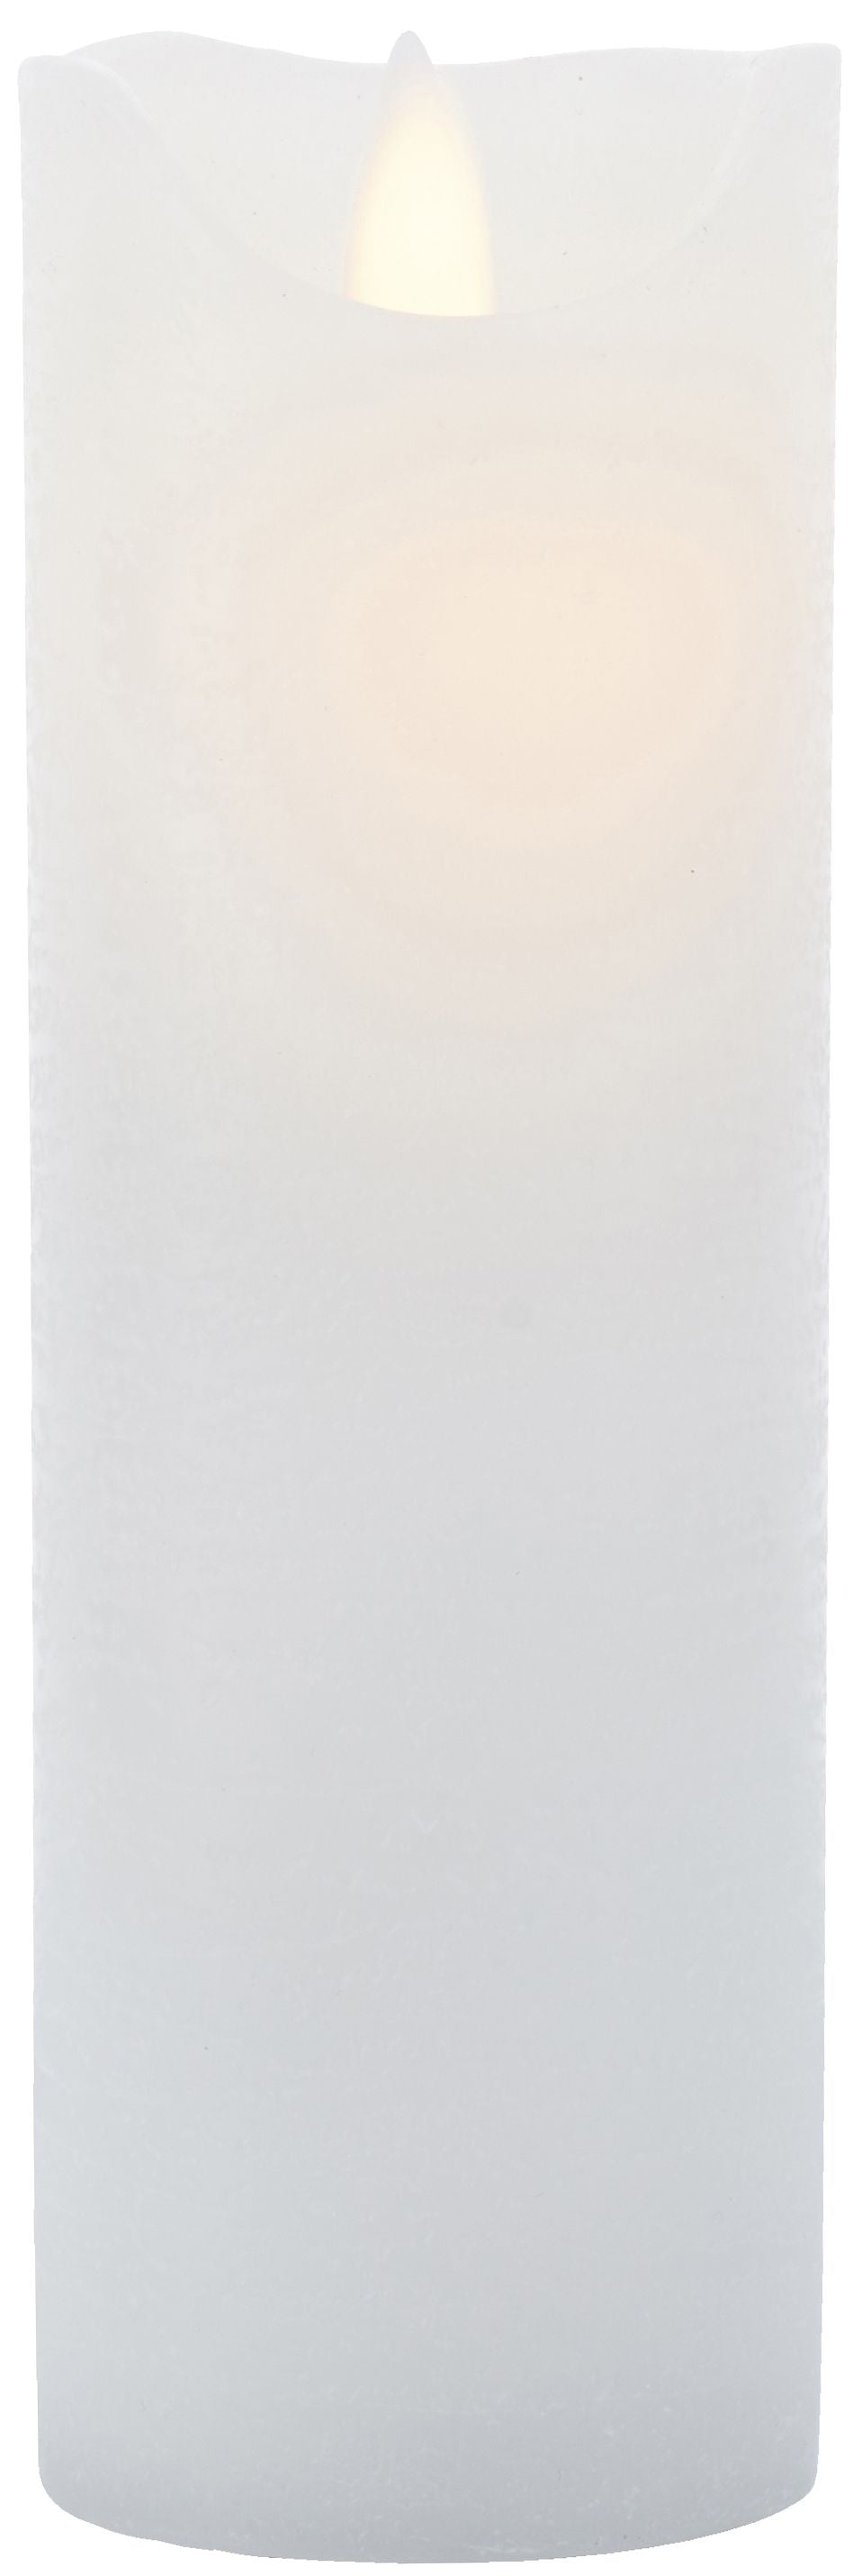 Sirius Sara recargable Vela LED blanca, Ø7,5x H20cm